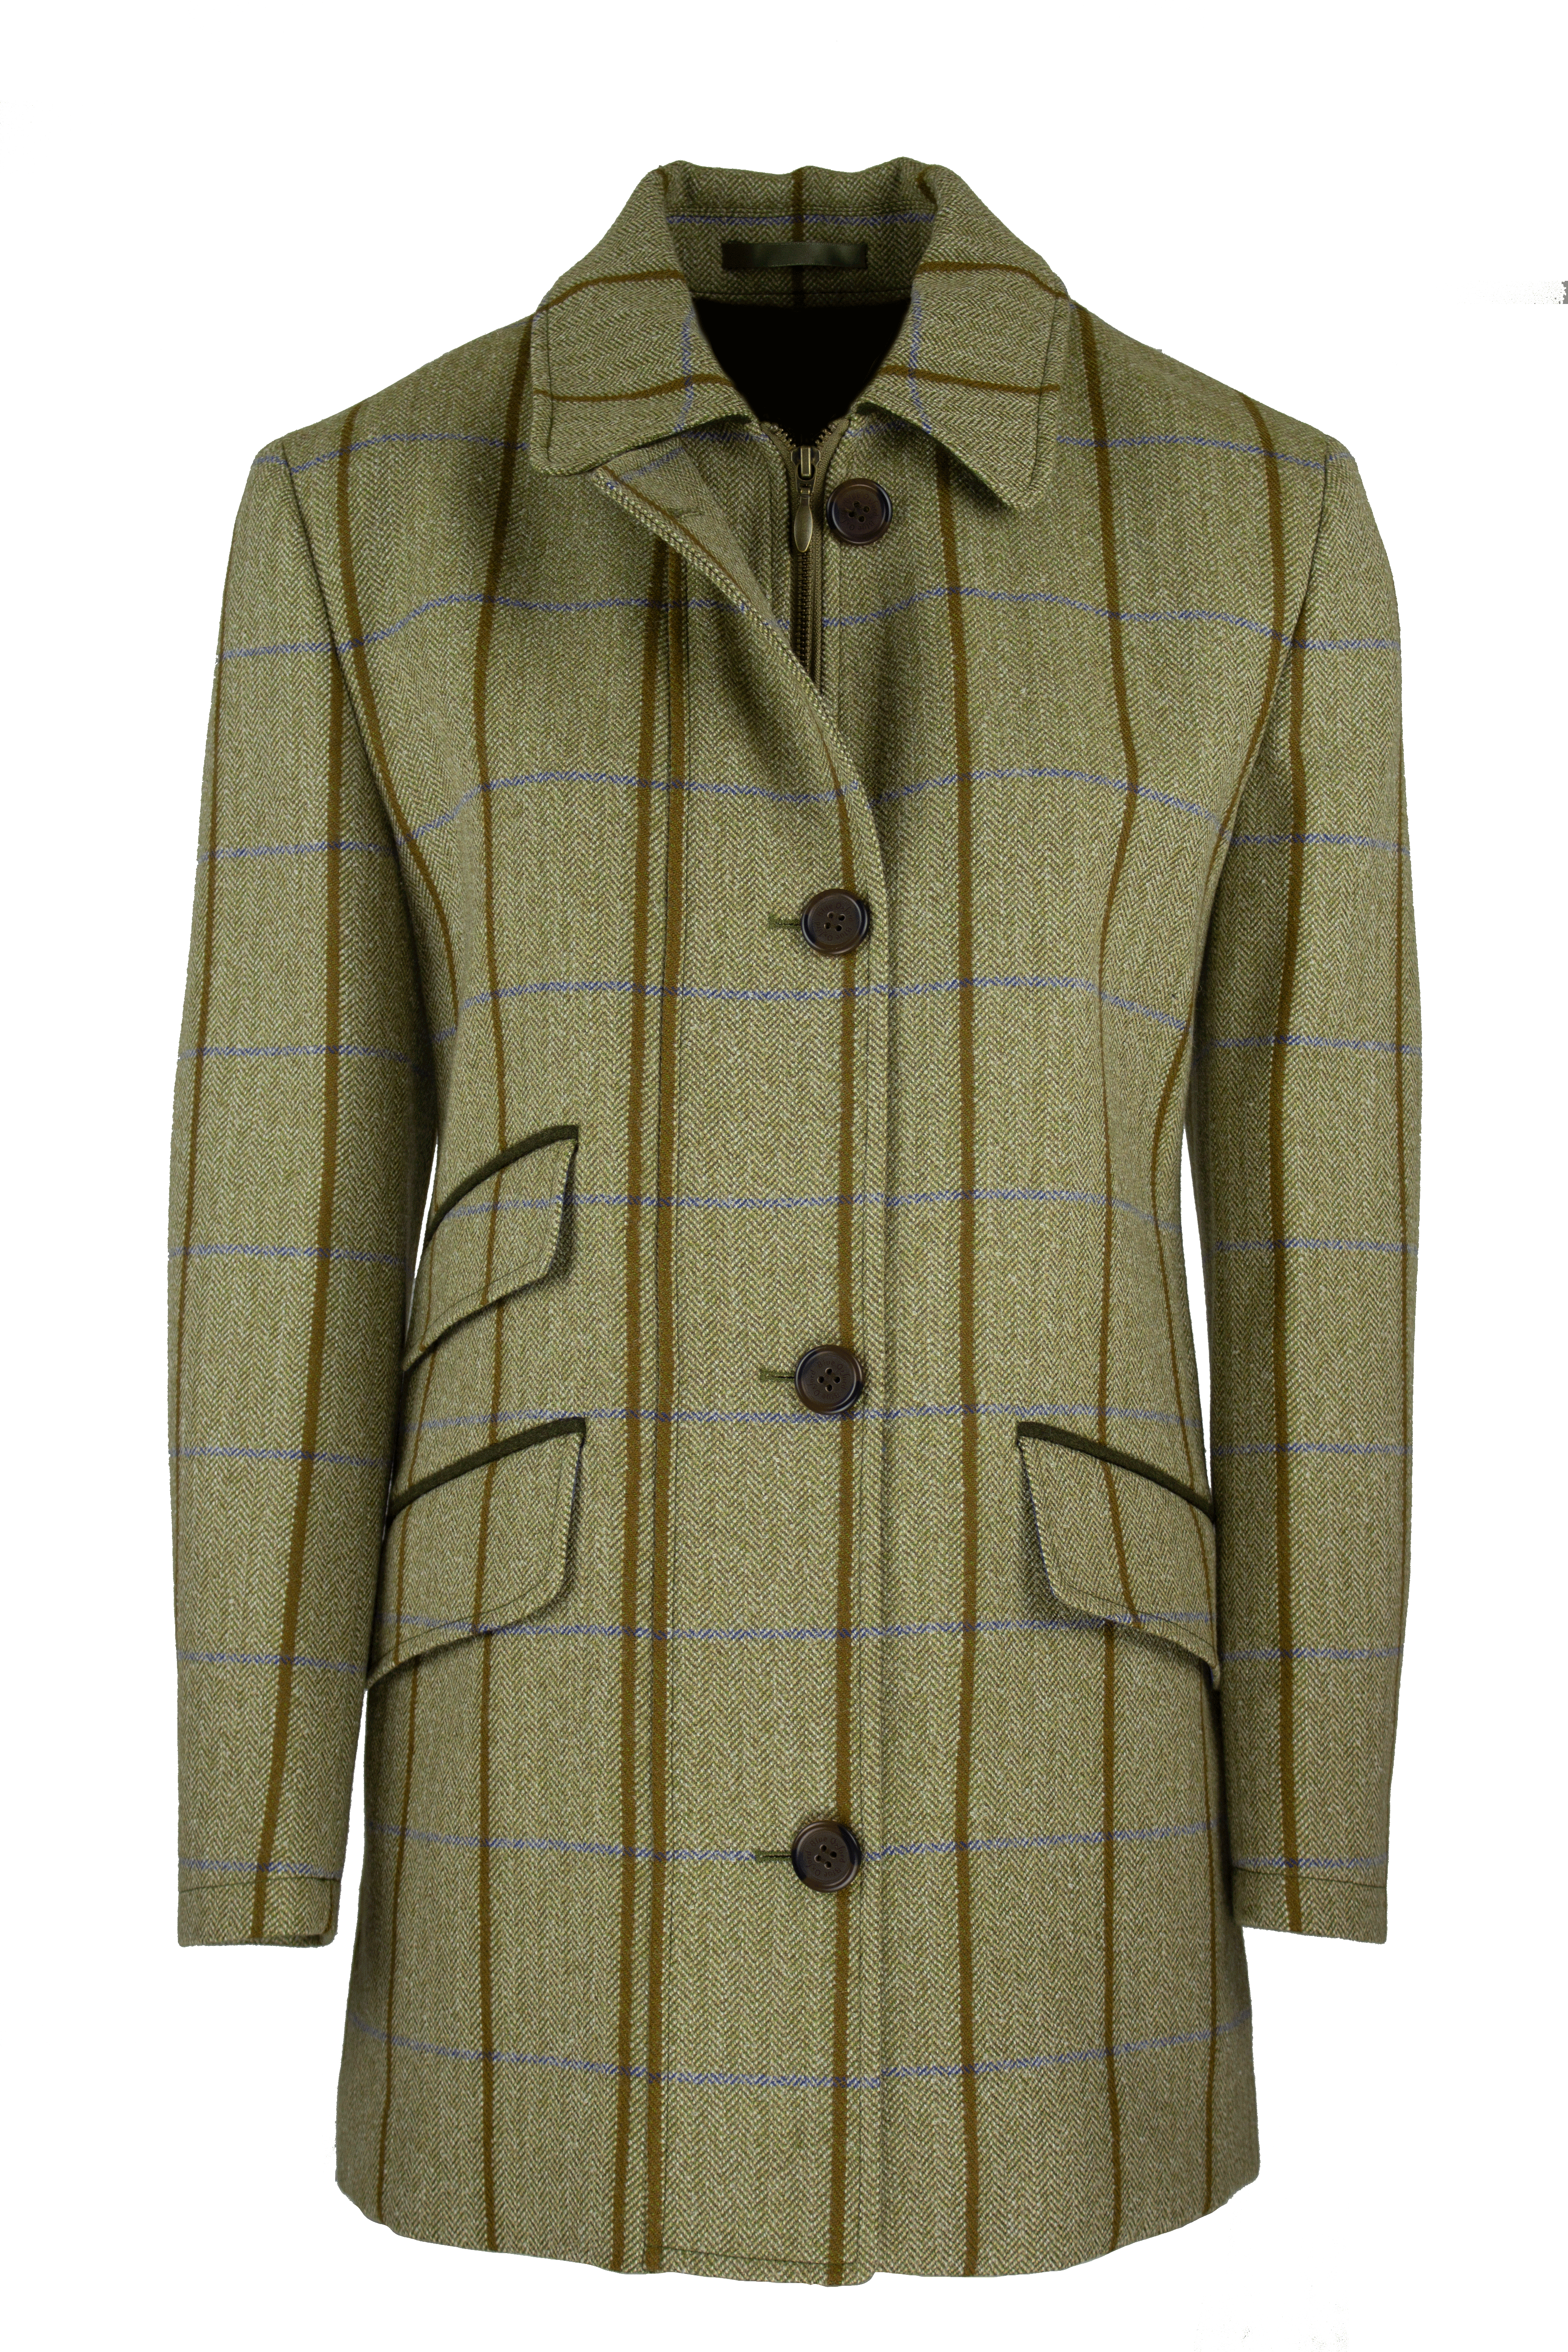 LTW02 - Women's Tailored Tweed Coat - BLUE